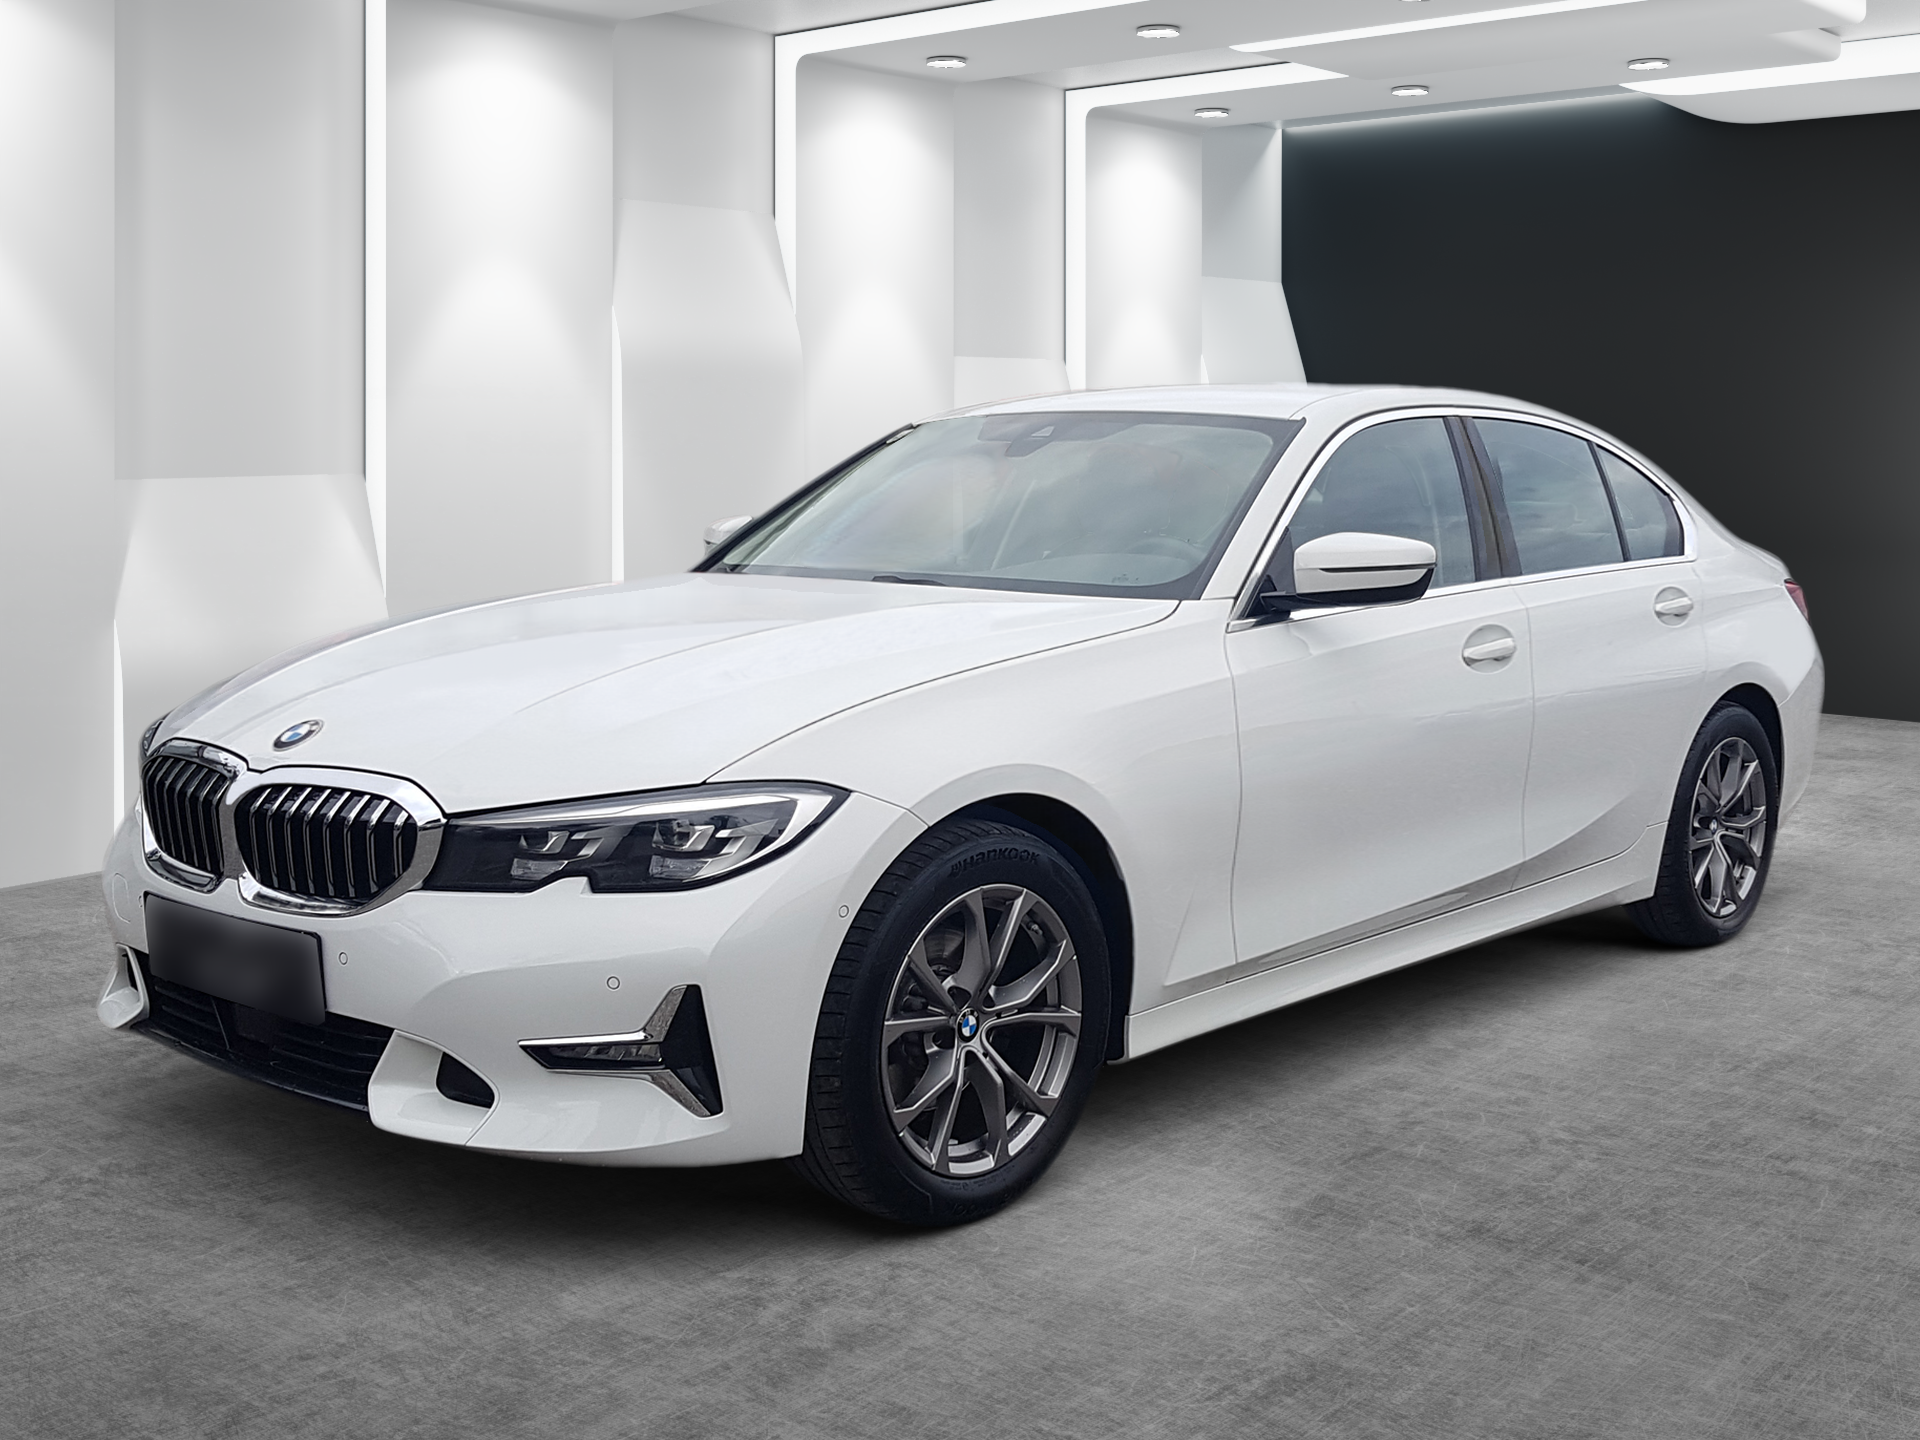 Fahrzeugfotografie: BMW vor futuristischem digitalen Showroom